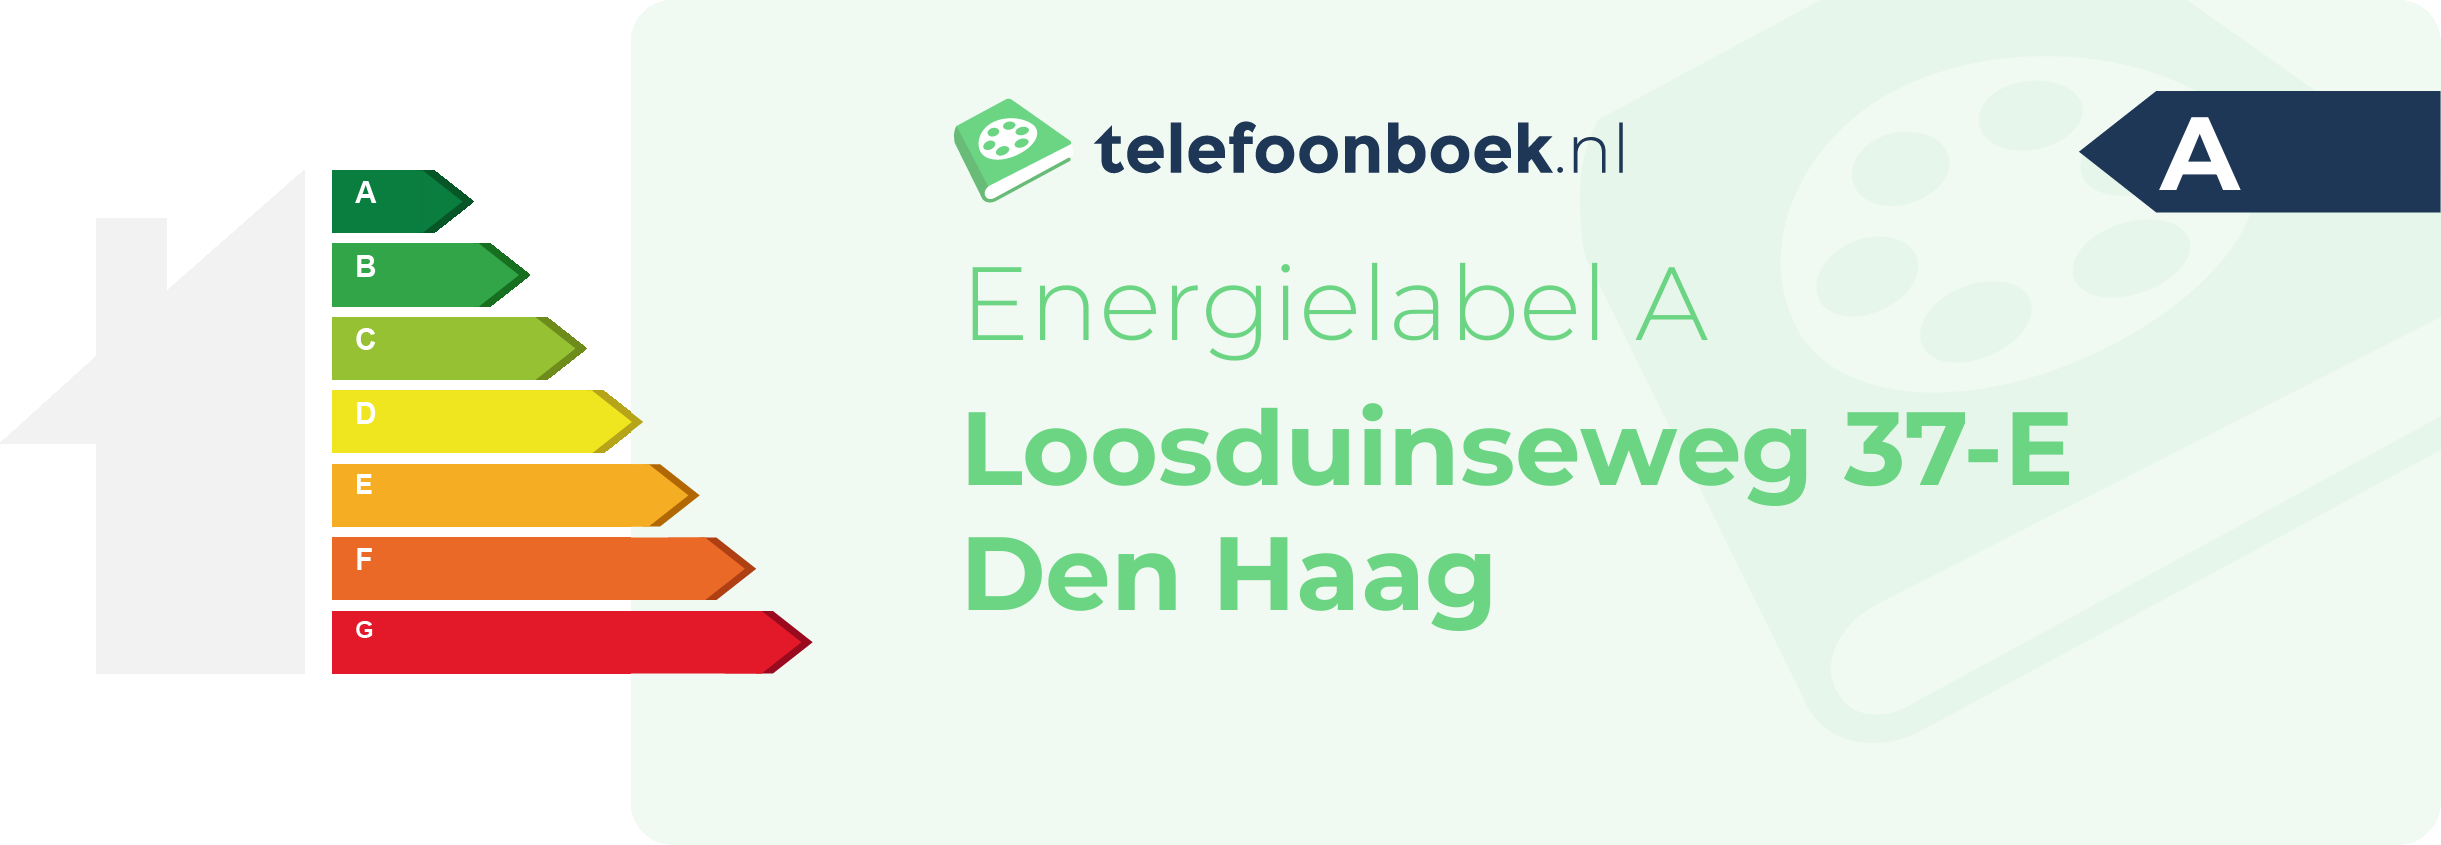 Energielabel Loosduinseweg 37-E Den Haag